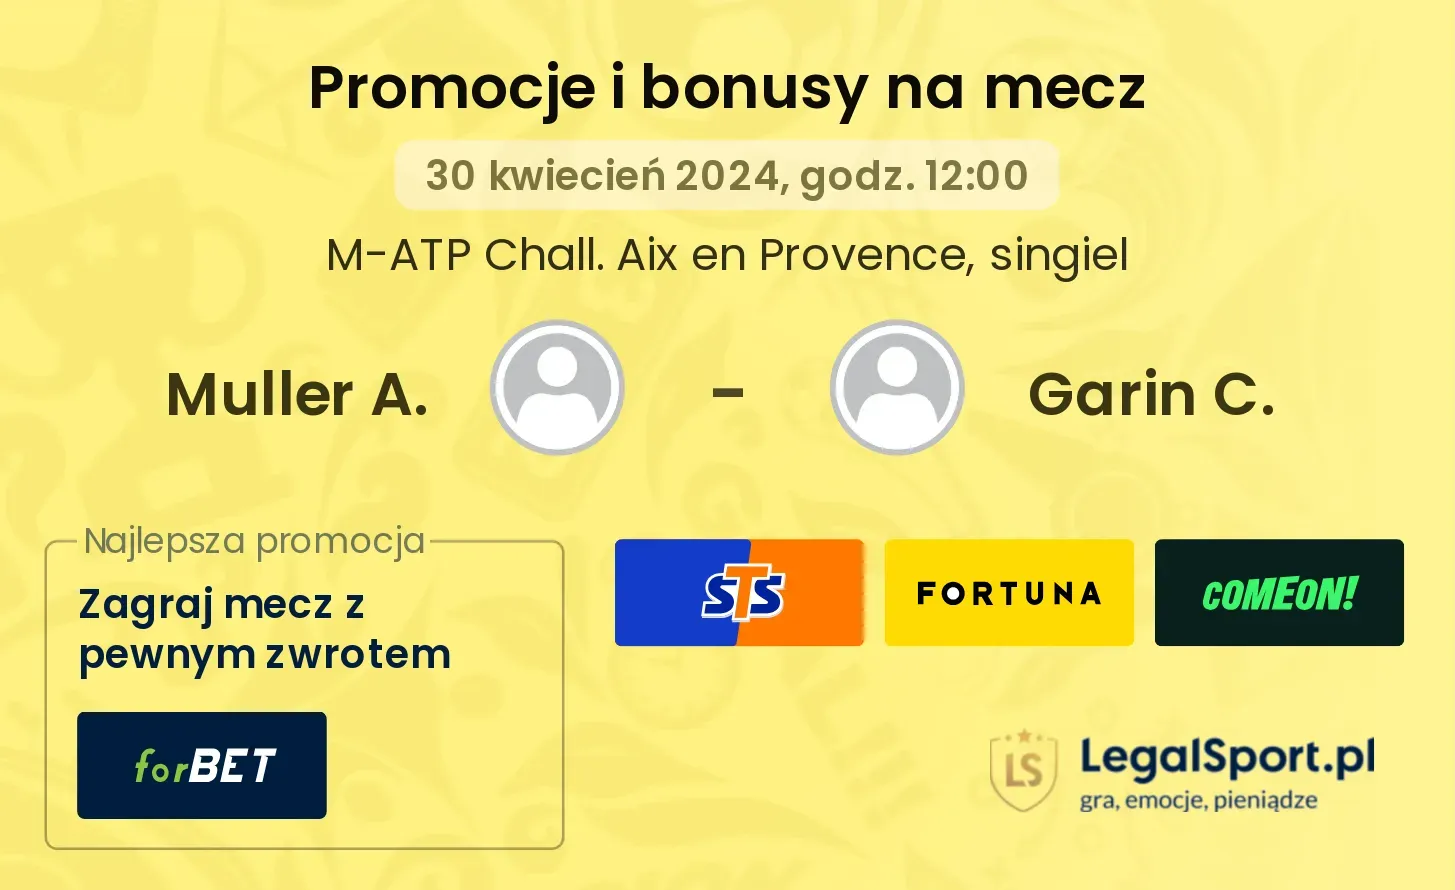 Muller A. - Garin C. promocje bonusy na mecz